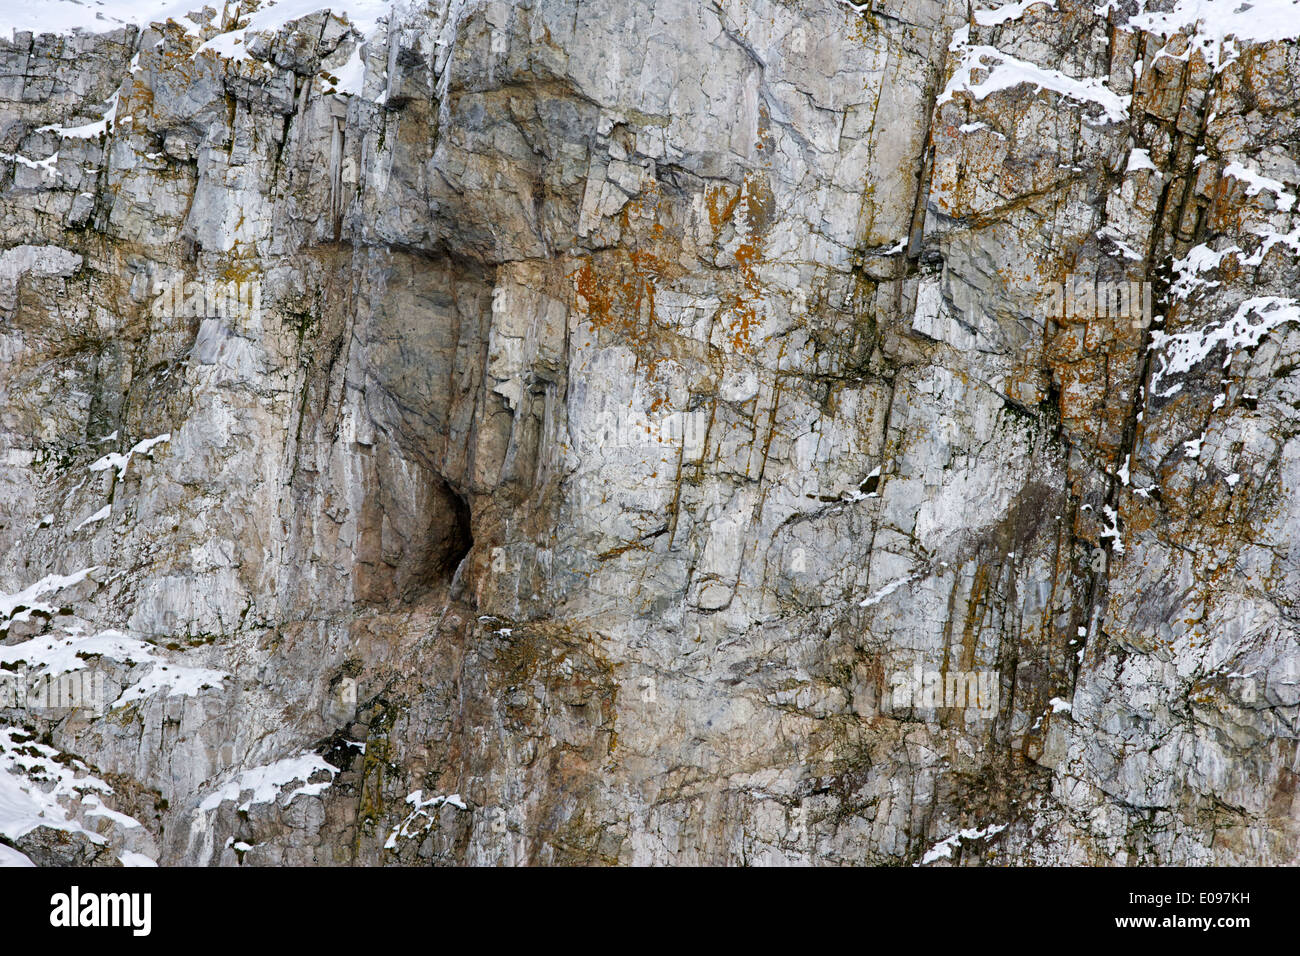 Antartide tonalite granodiorite strati di roccia a cierva cove con i licheni Foto Stock